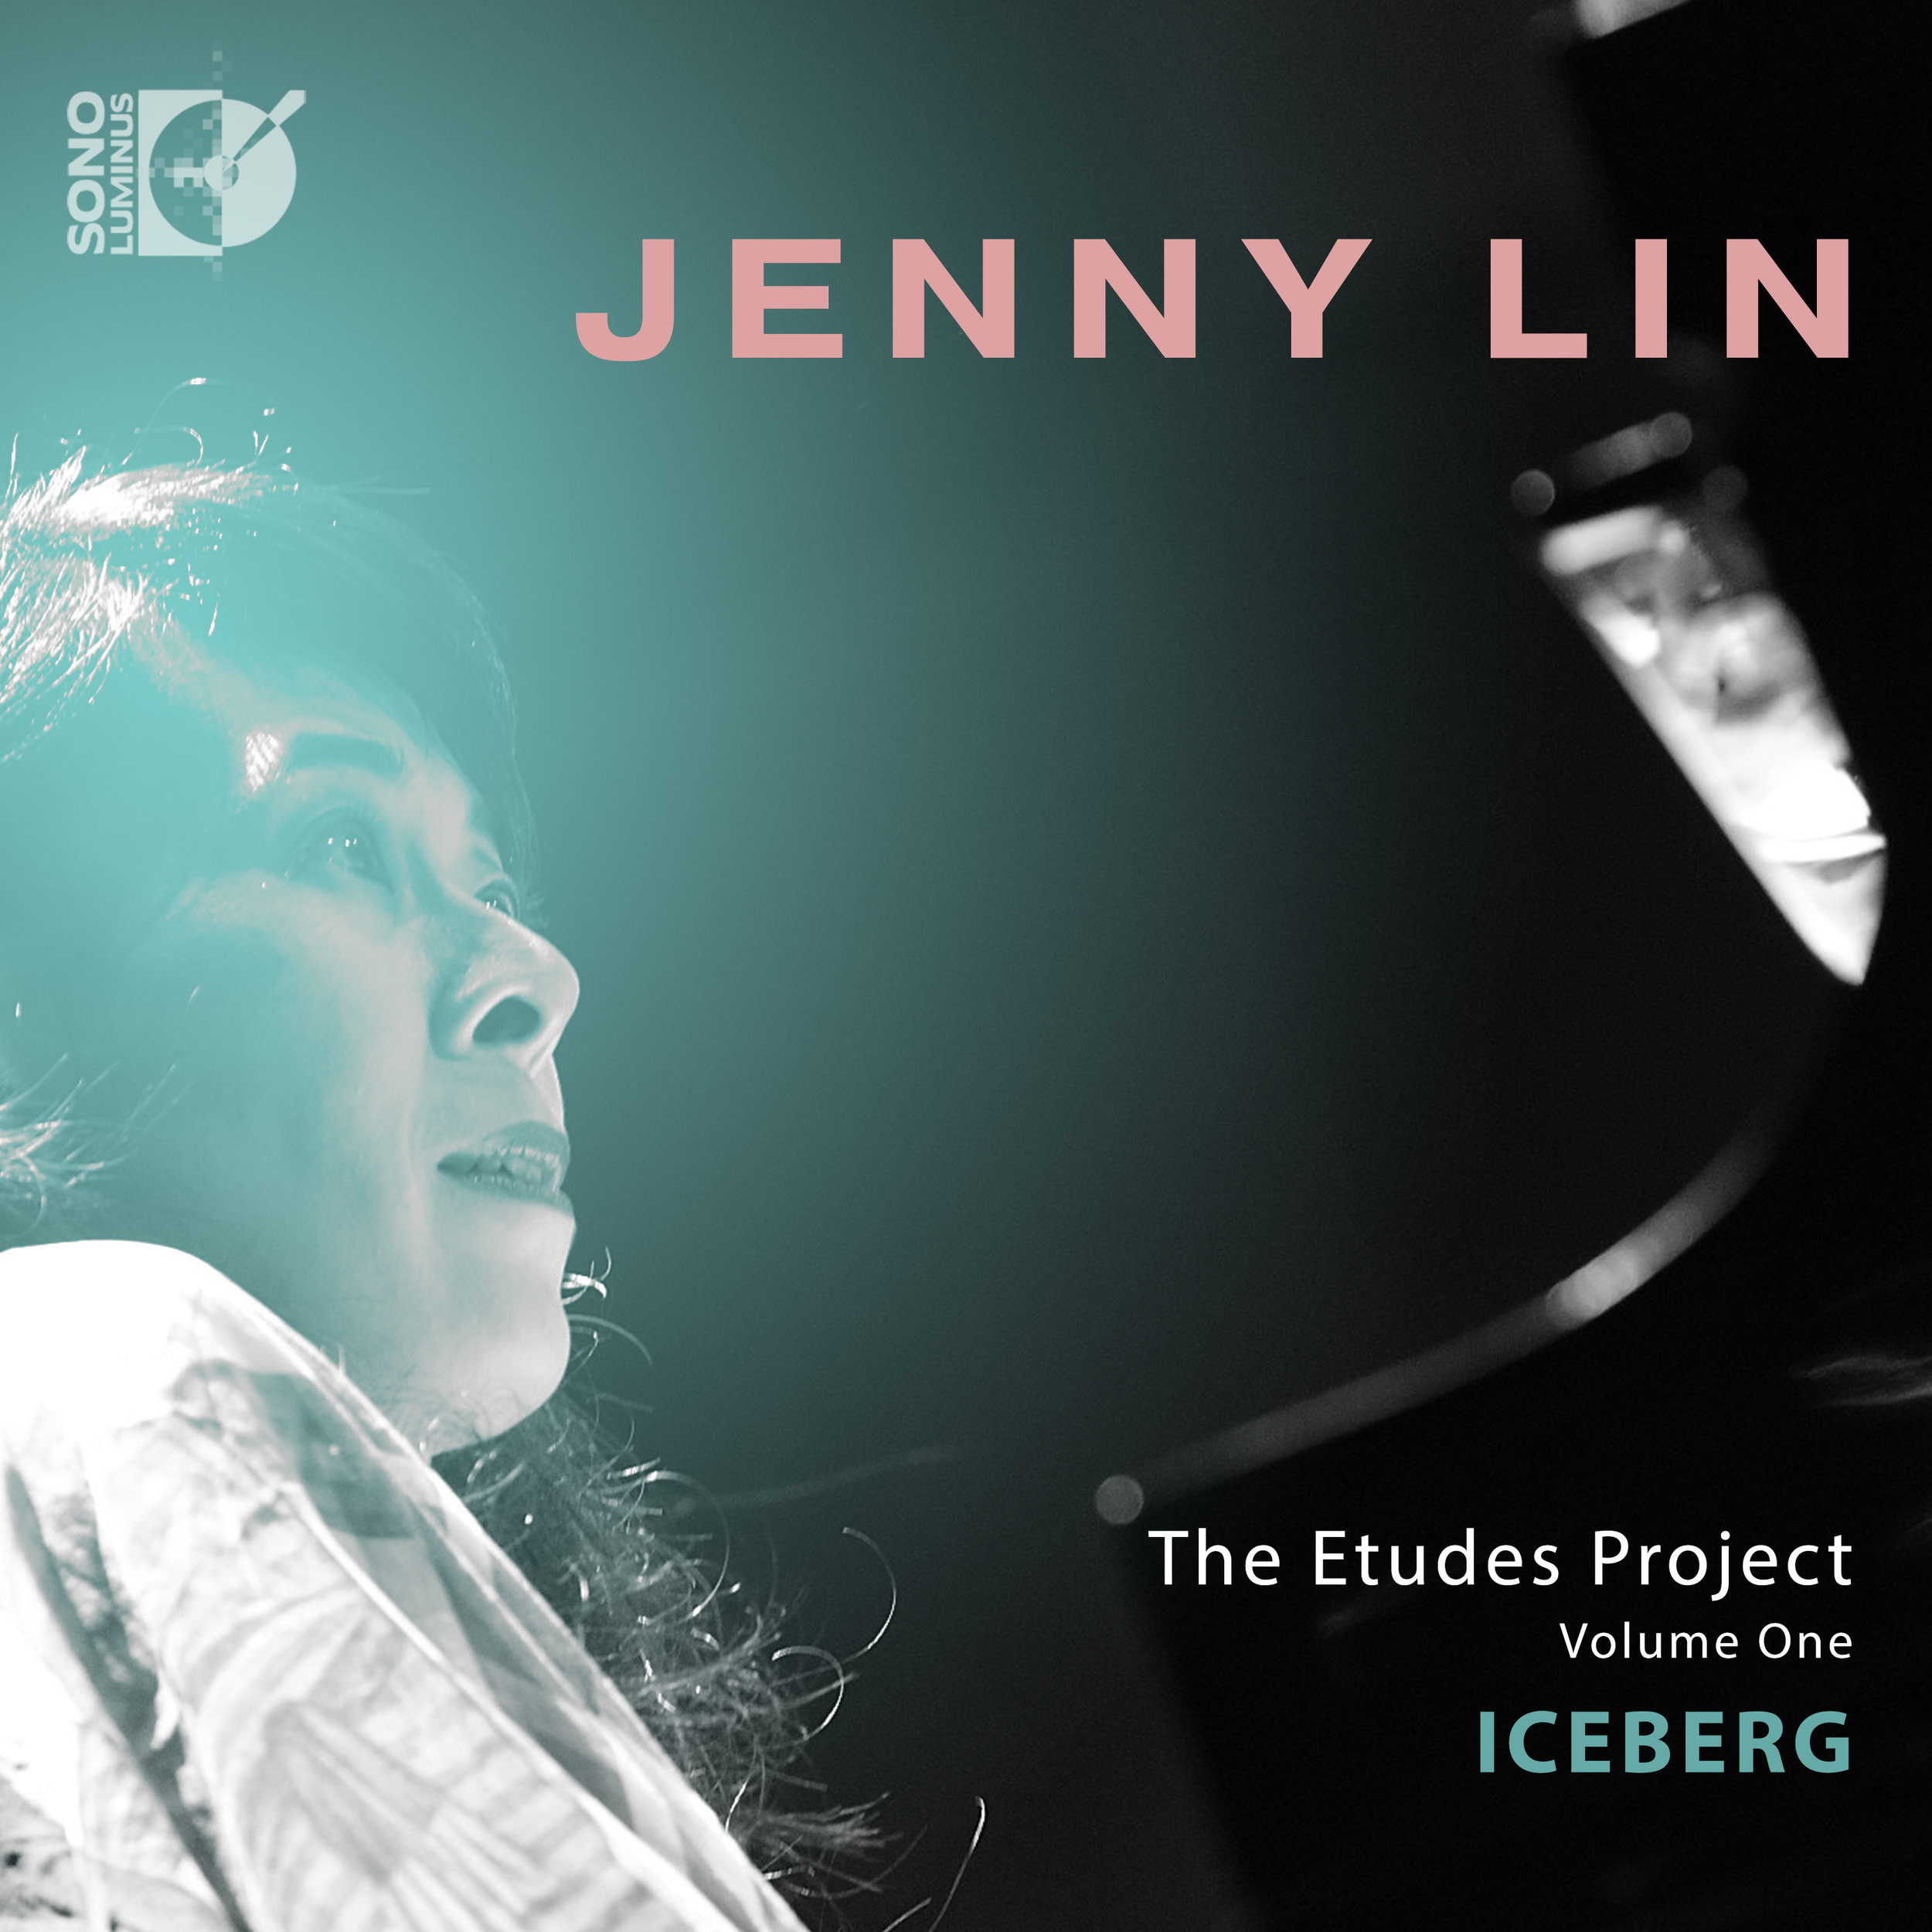 Jenny Lin - The Etudes Project, Vol. 1: Iceberg (2019) [FLAC 24bit/96kHz]